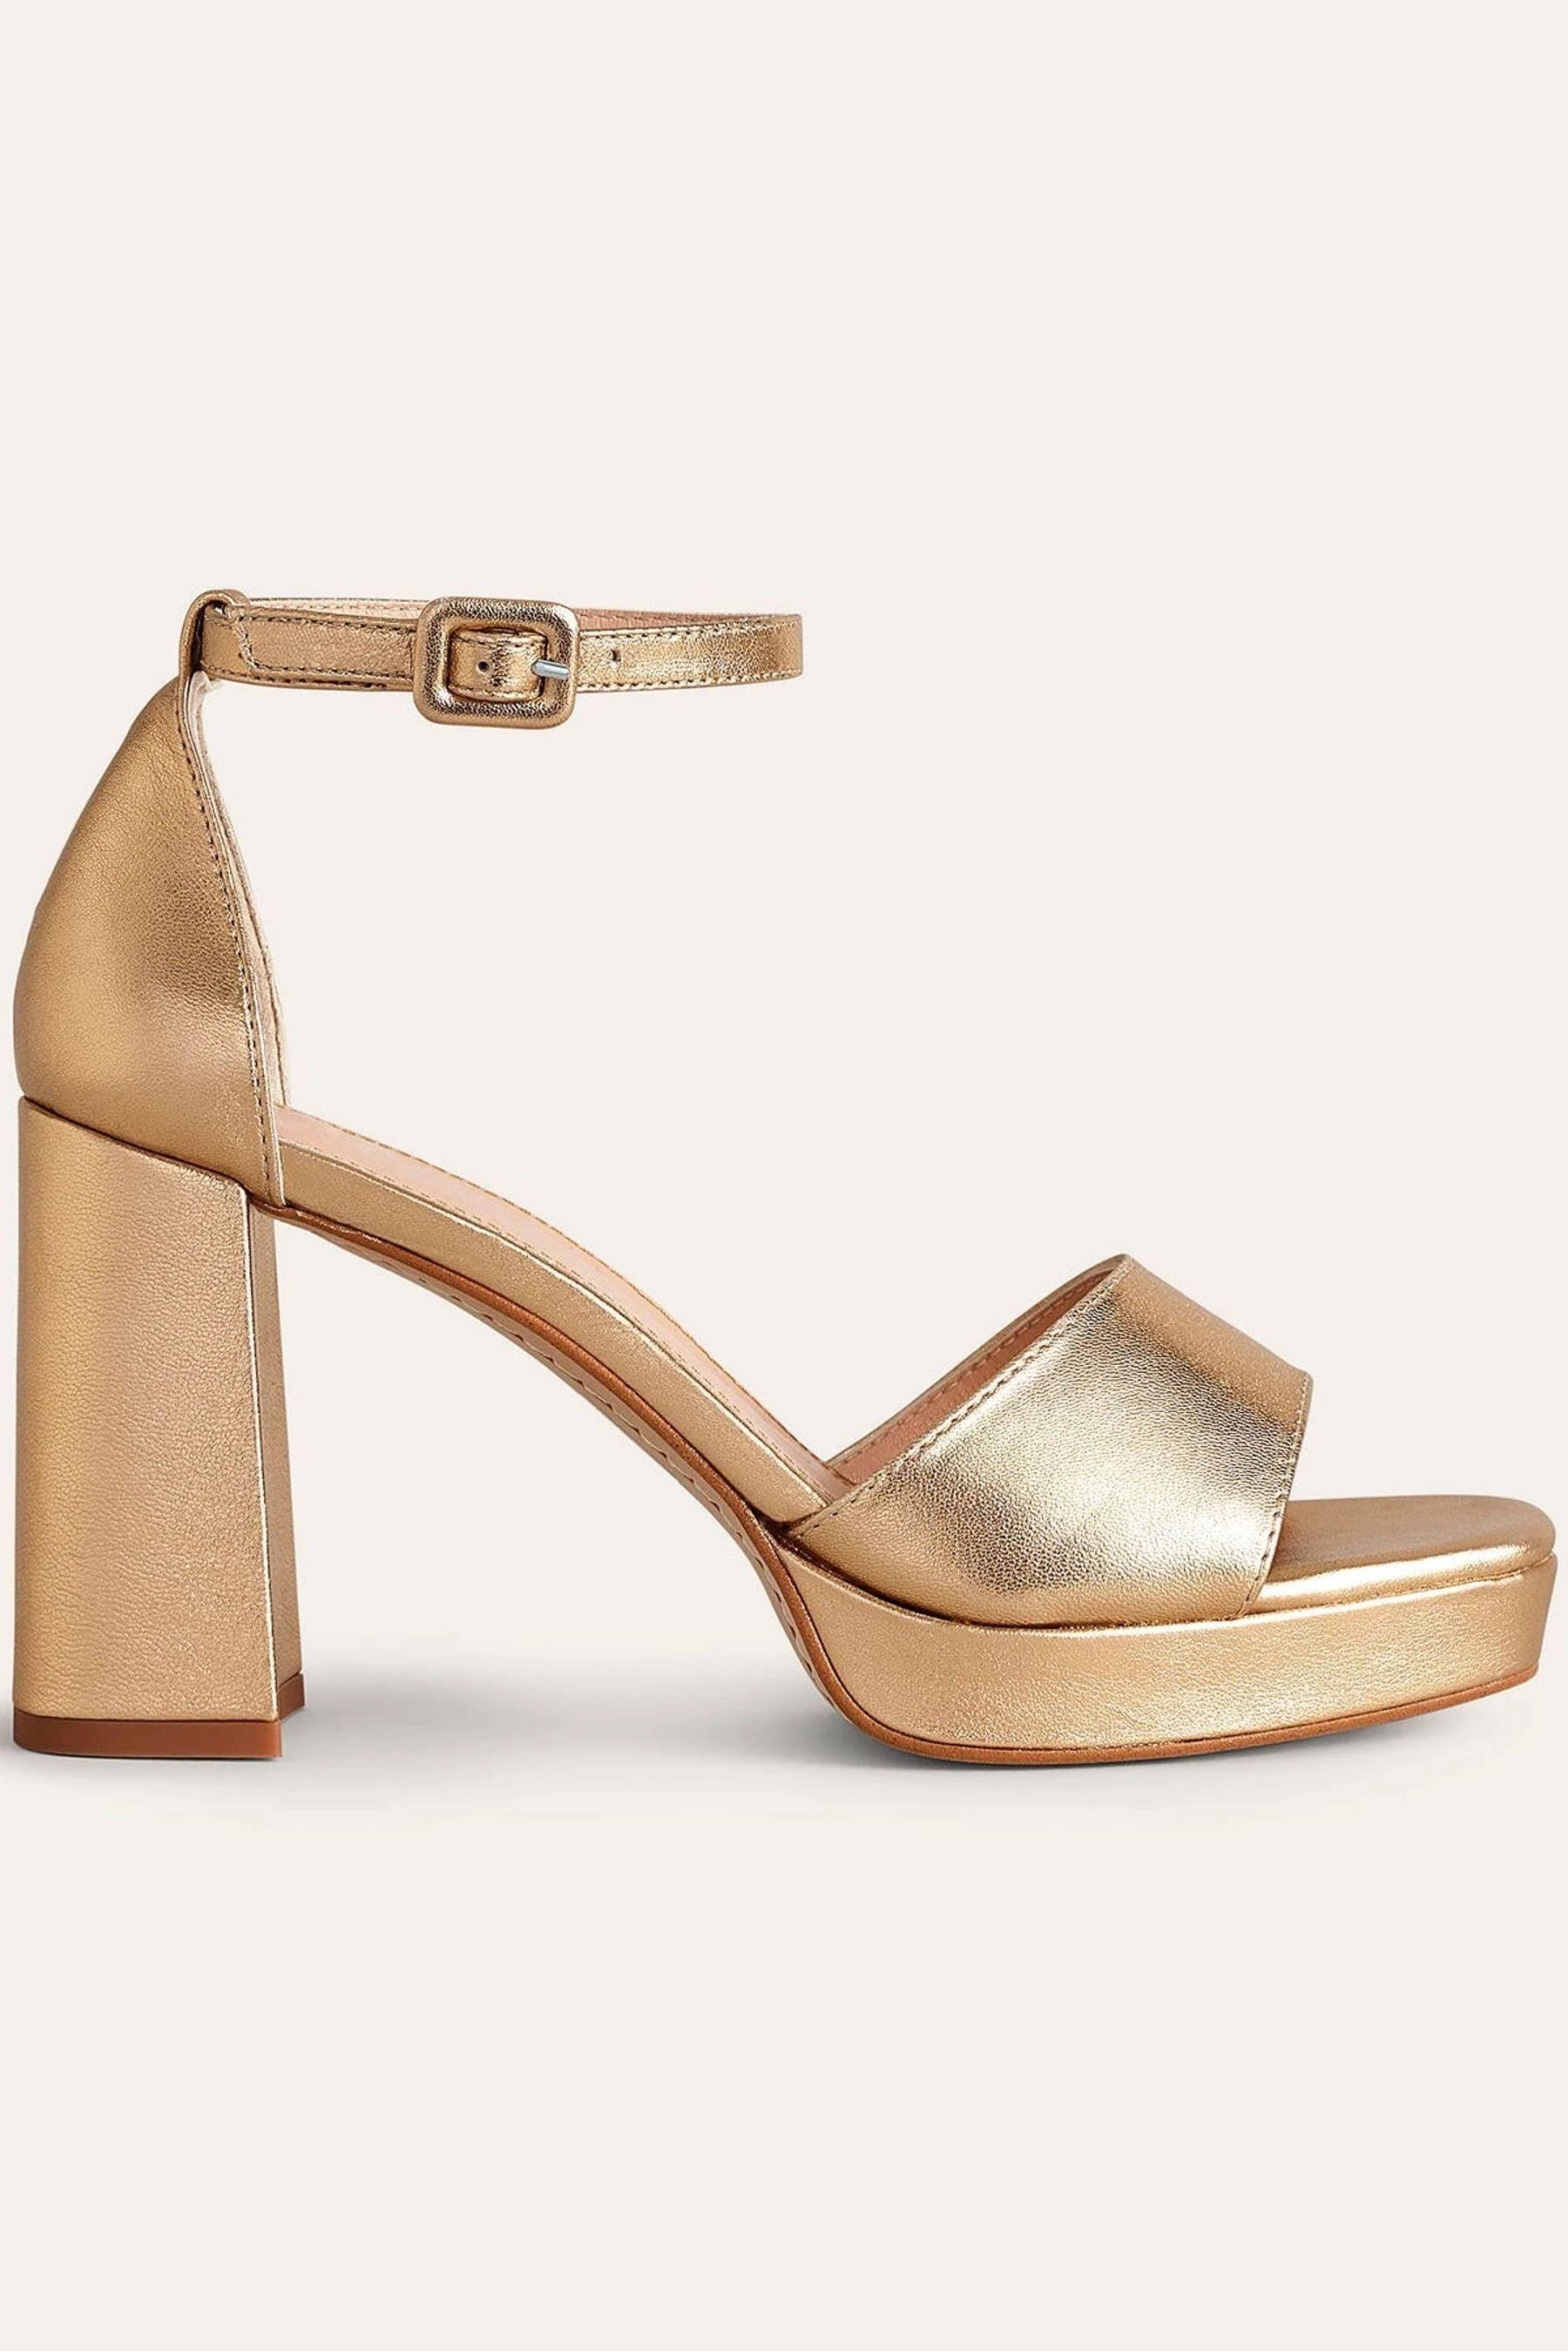 Golden Heeled Platform Sandals for Stylish Dancing | Image